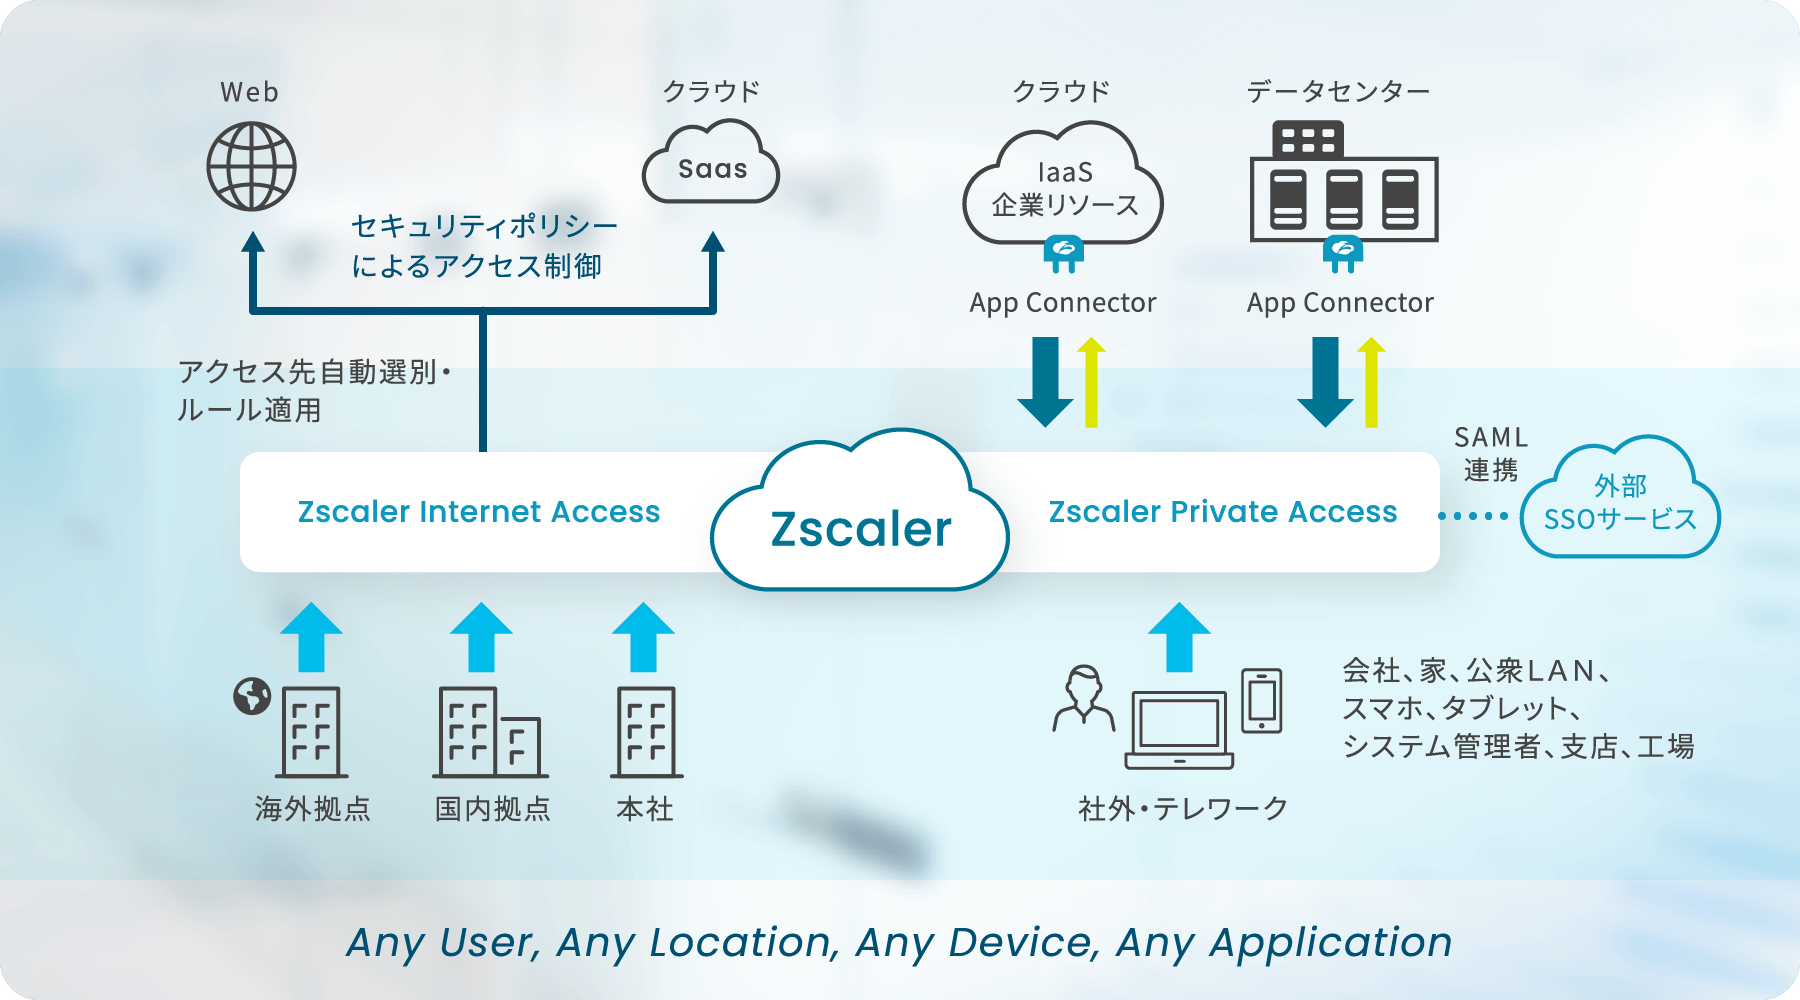 アクセス元は海外拠点、国内拠点、本社、社外、テレワーク、工場、家などから、公衆LAN、スマホ、タブレットを使用し、Zscalerにアクセスをする。ZscalerのZIAはアクセス先自動識別・ルール適用をしWebやクラウドSaaSにセキュリティポリシーによりセキュアにアクセス可能。ZPIはSAML連携により外部SSOサービスへアクセス、App Connectorを使用しIaaS企業リソースやデータセンターとの通信を実施する。